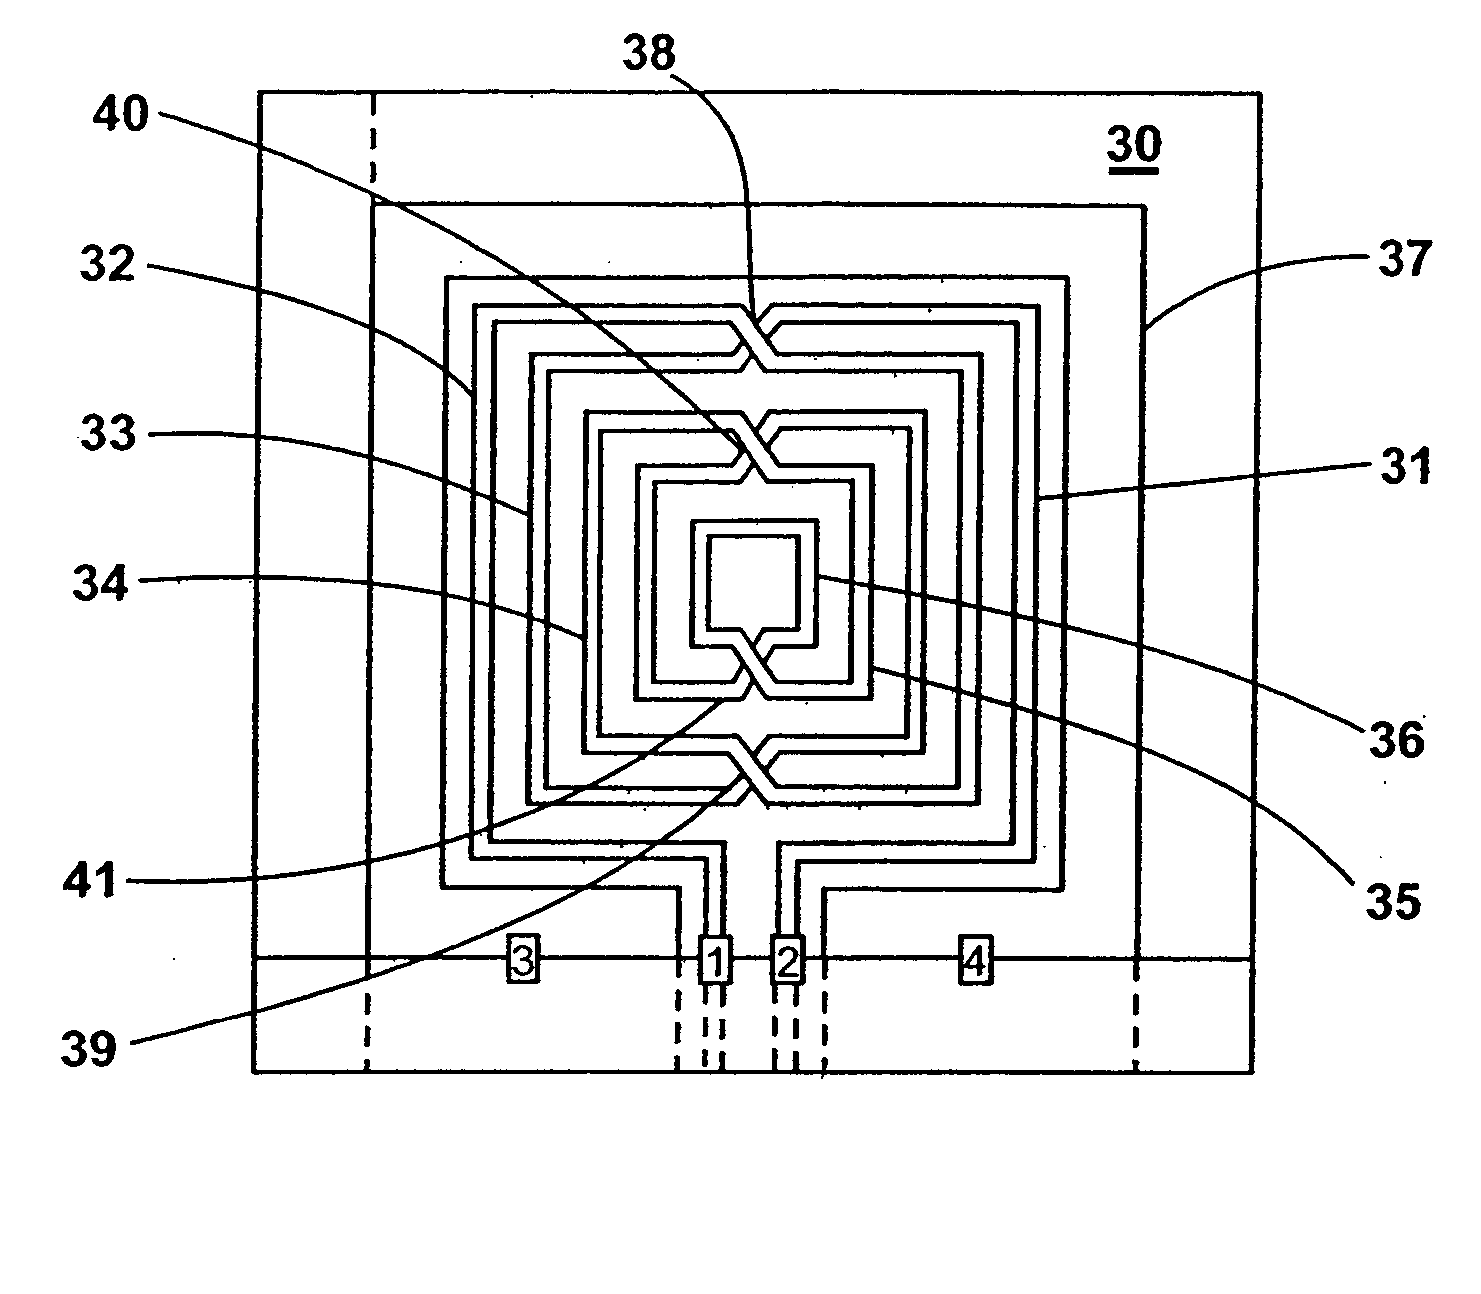 Symmetric planar inductor